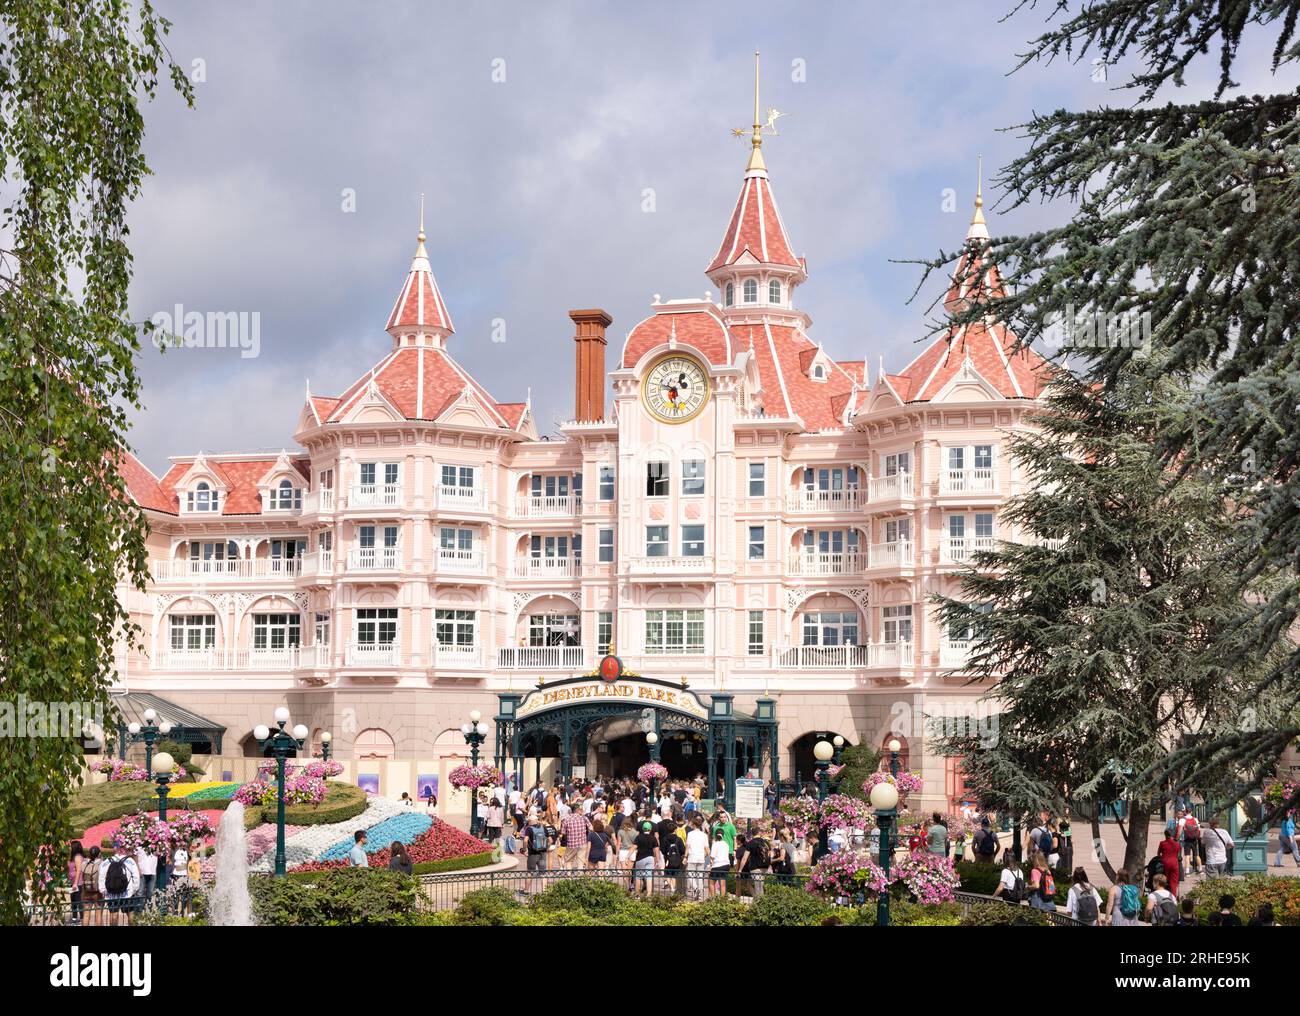 L'hôtel Disneyland, contenant l'entrée de Disneyland Paris pour les visiteurs ; Disney, Paris France Europe Banque D'Images